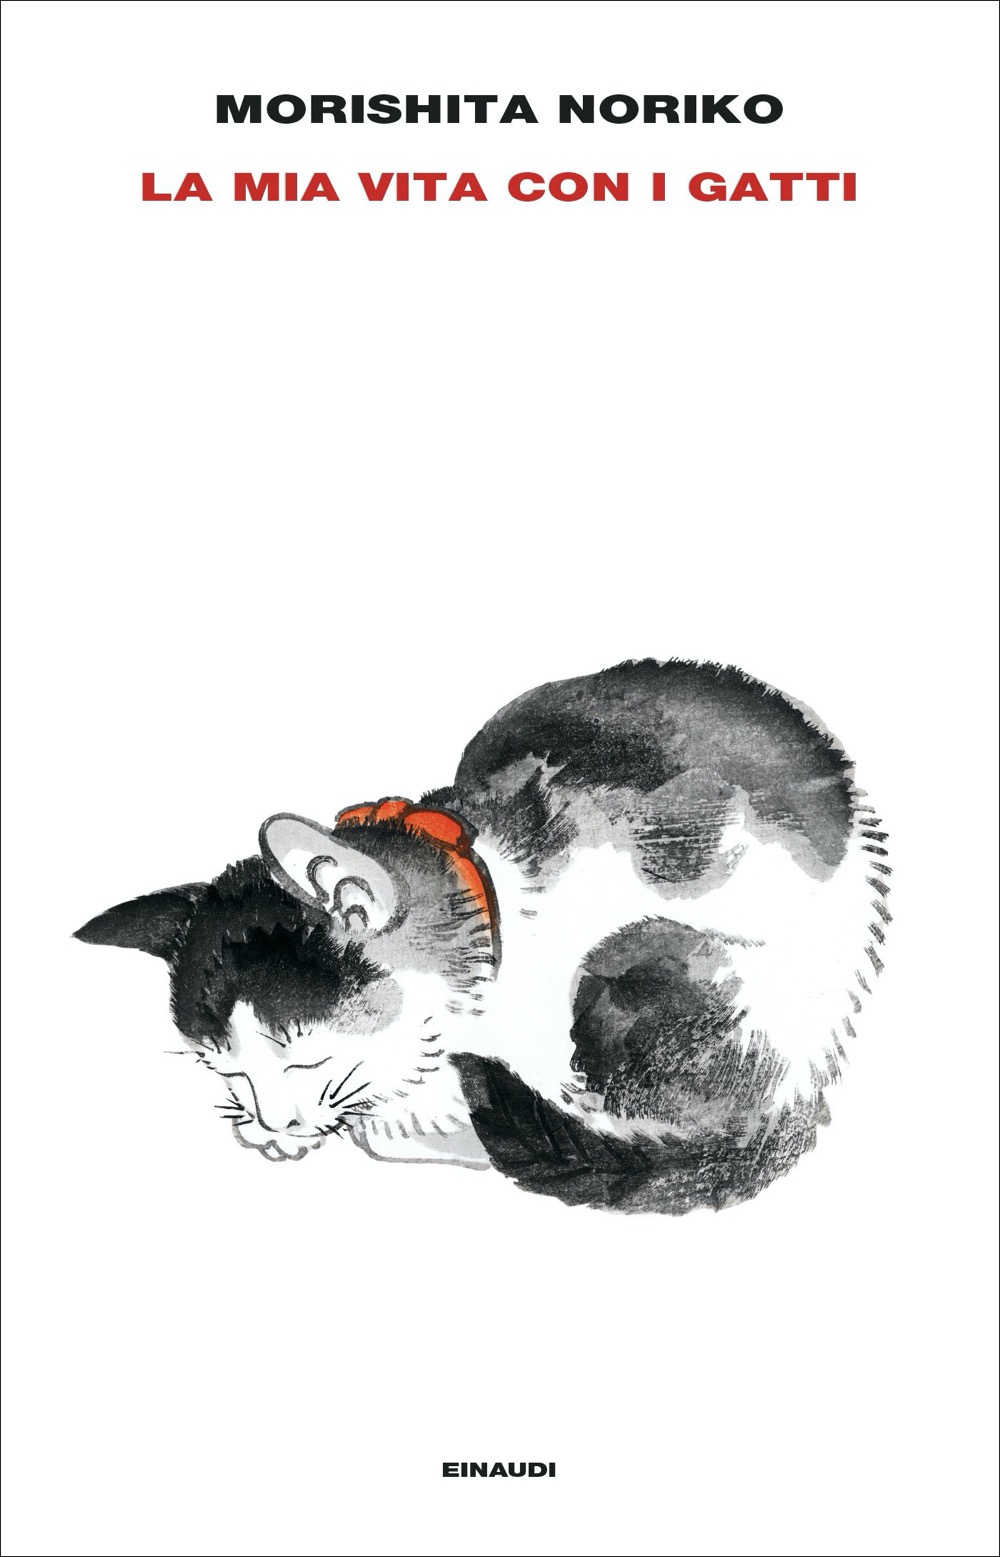 La mia vita con i gatti, Morishita Noriko. Giulio Einaudi editore -  Supercoralli